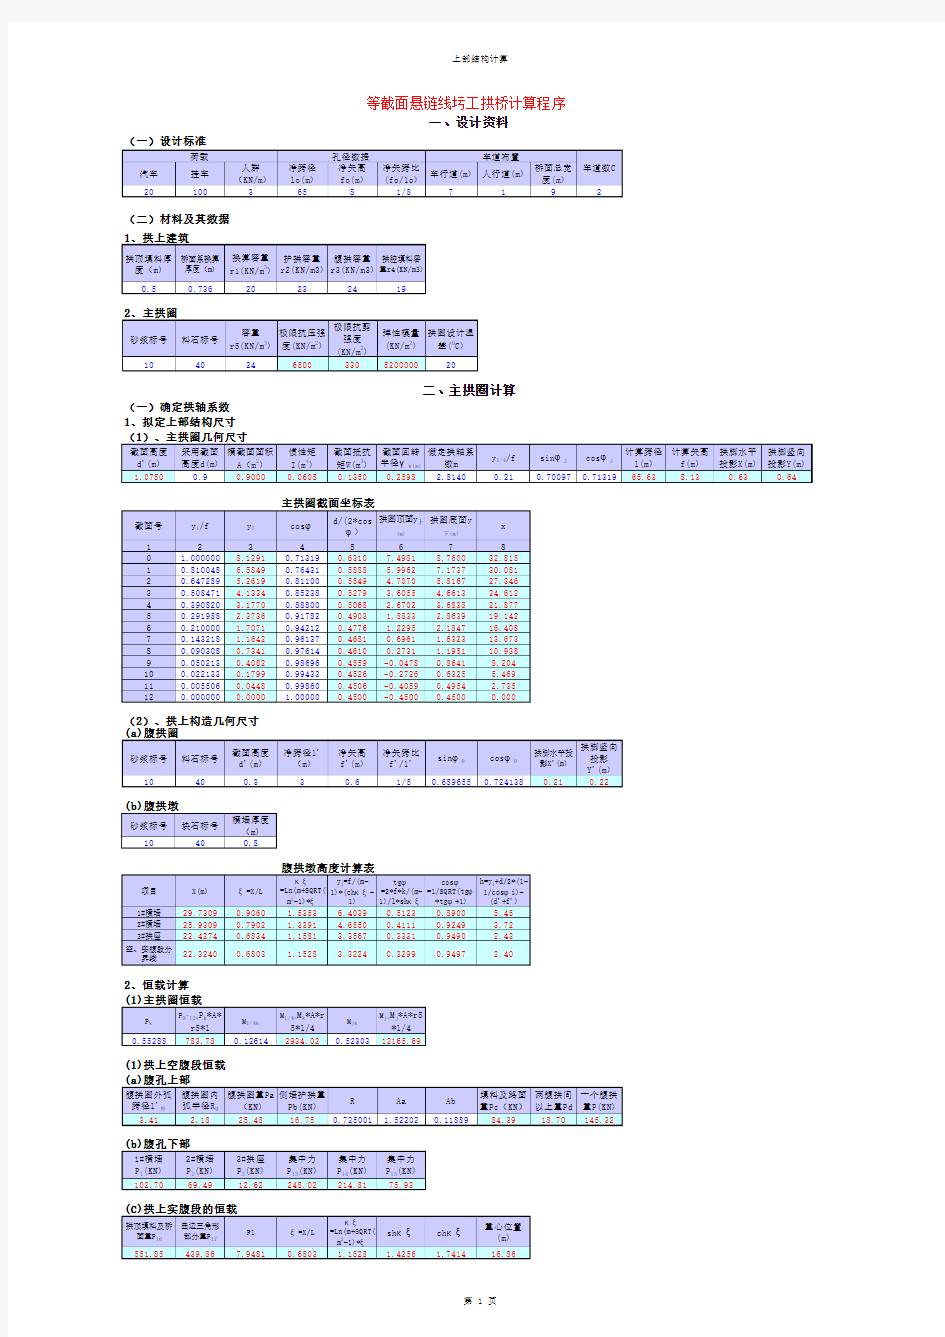 拱桥计算程序——EXCEL公式嵌套,设计计算模板